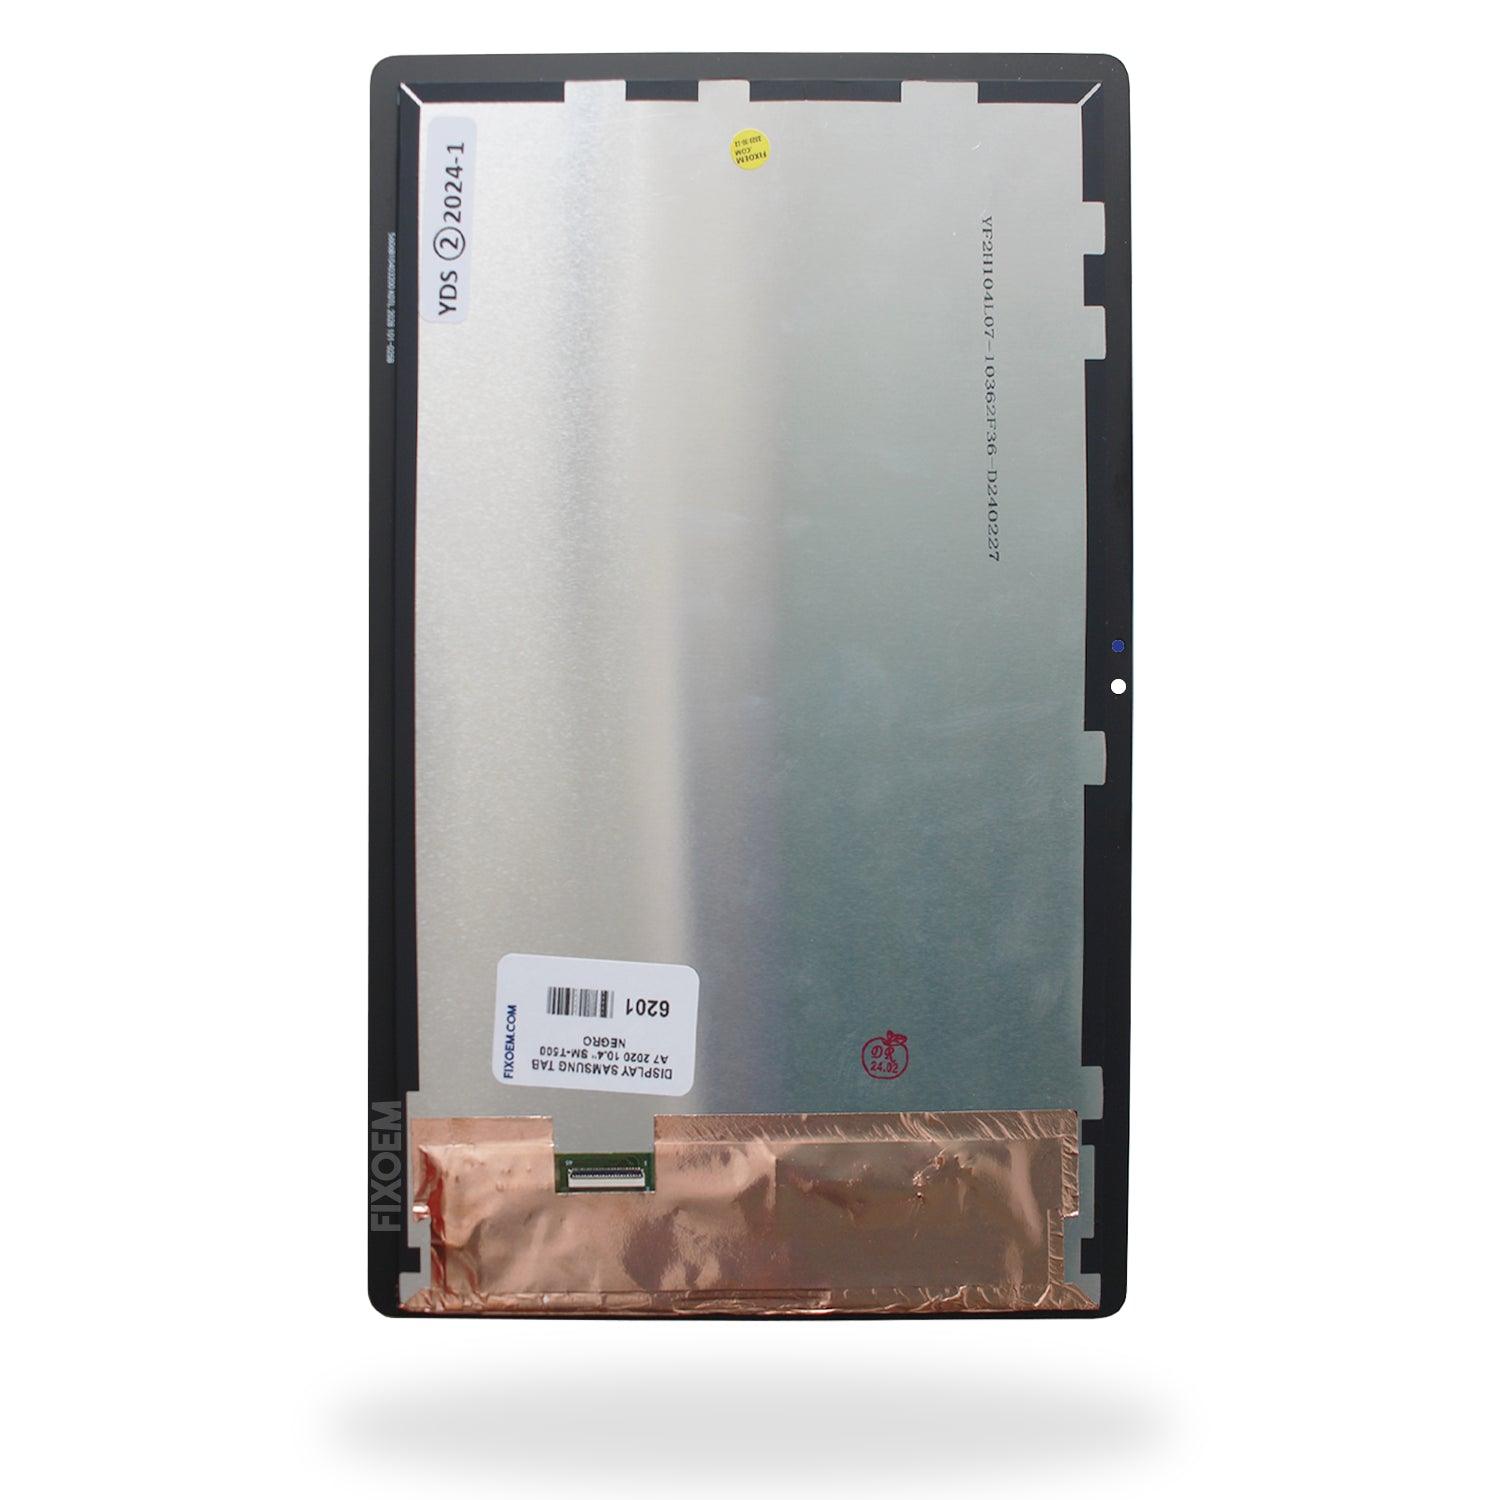 Display Samsung Tab A7 2020 10.4 Sm-T500 Negro a solo $ 510.00 Refaccion y puestos celulares, refurbish y microelectronica.- FixOEM